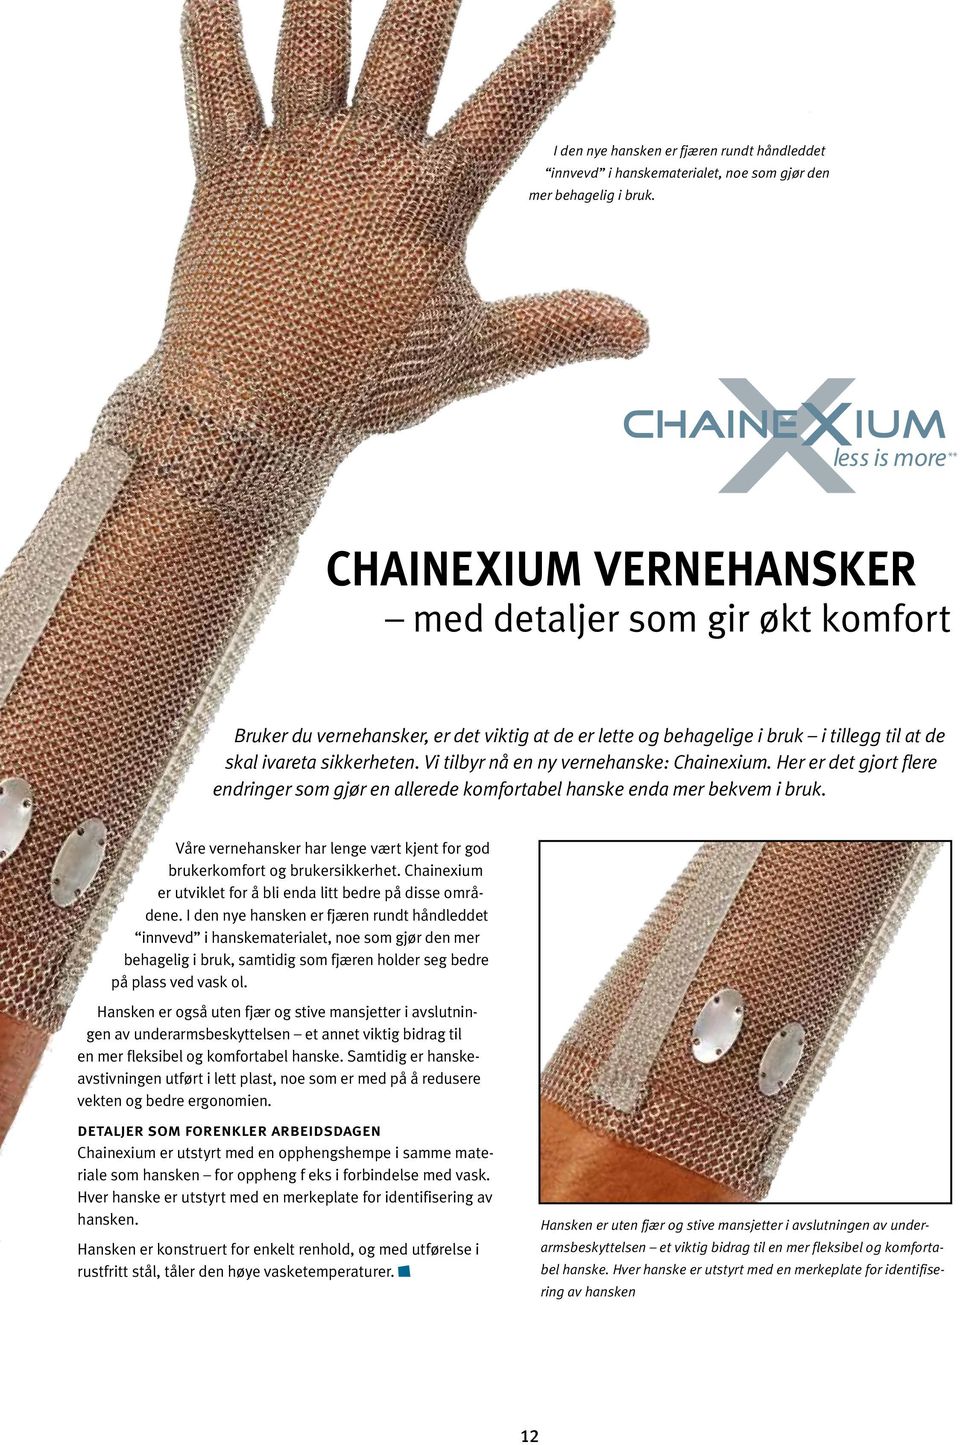 Vi tilbyr nå en ny vernehanske: Chainexium. Her er det gjort flere endringer som gjør en allerede komfortabel hanske enda mer bekvem i bruk.